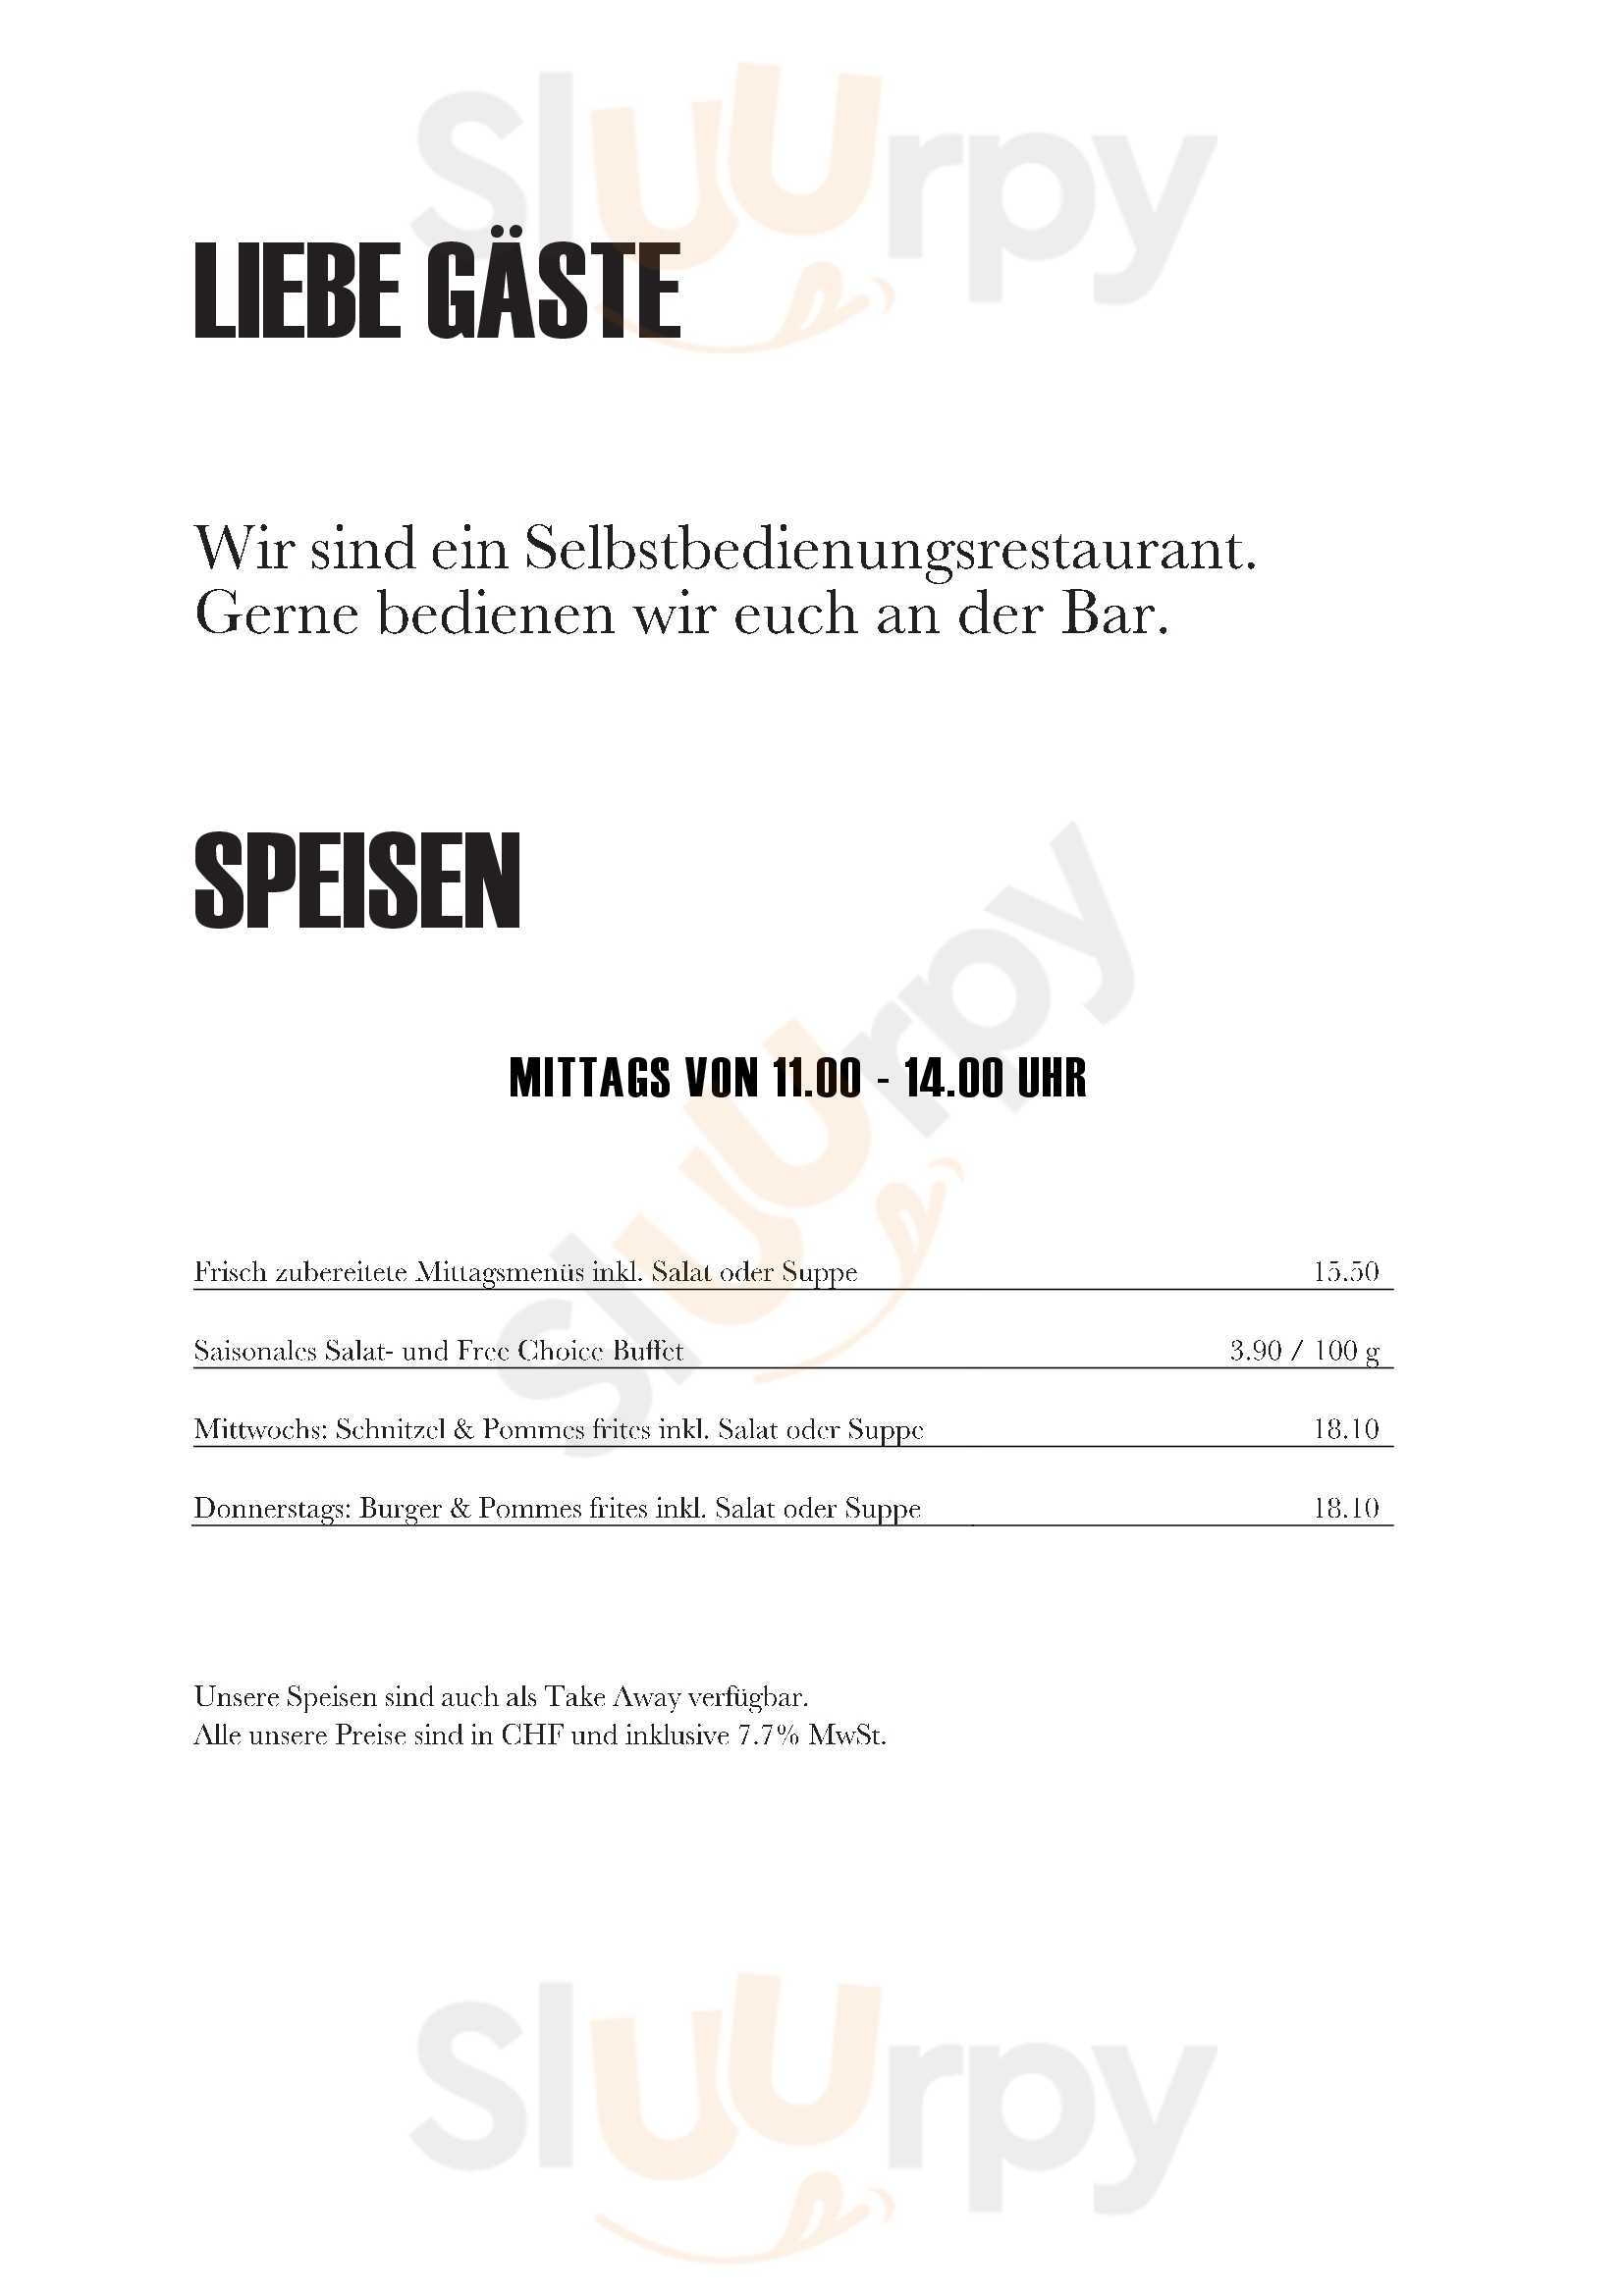 Restaurant Grosse Schanze Bern Menu - 1